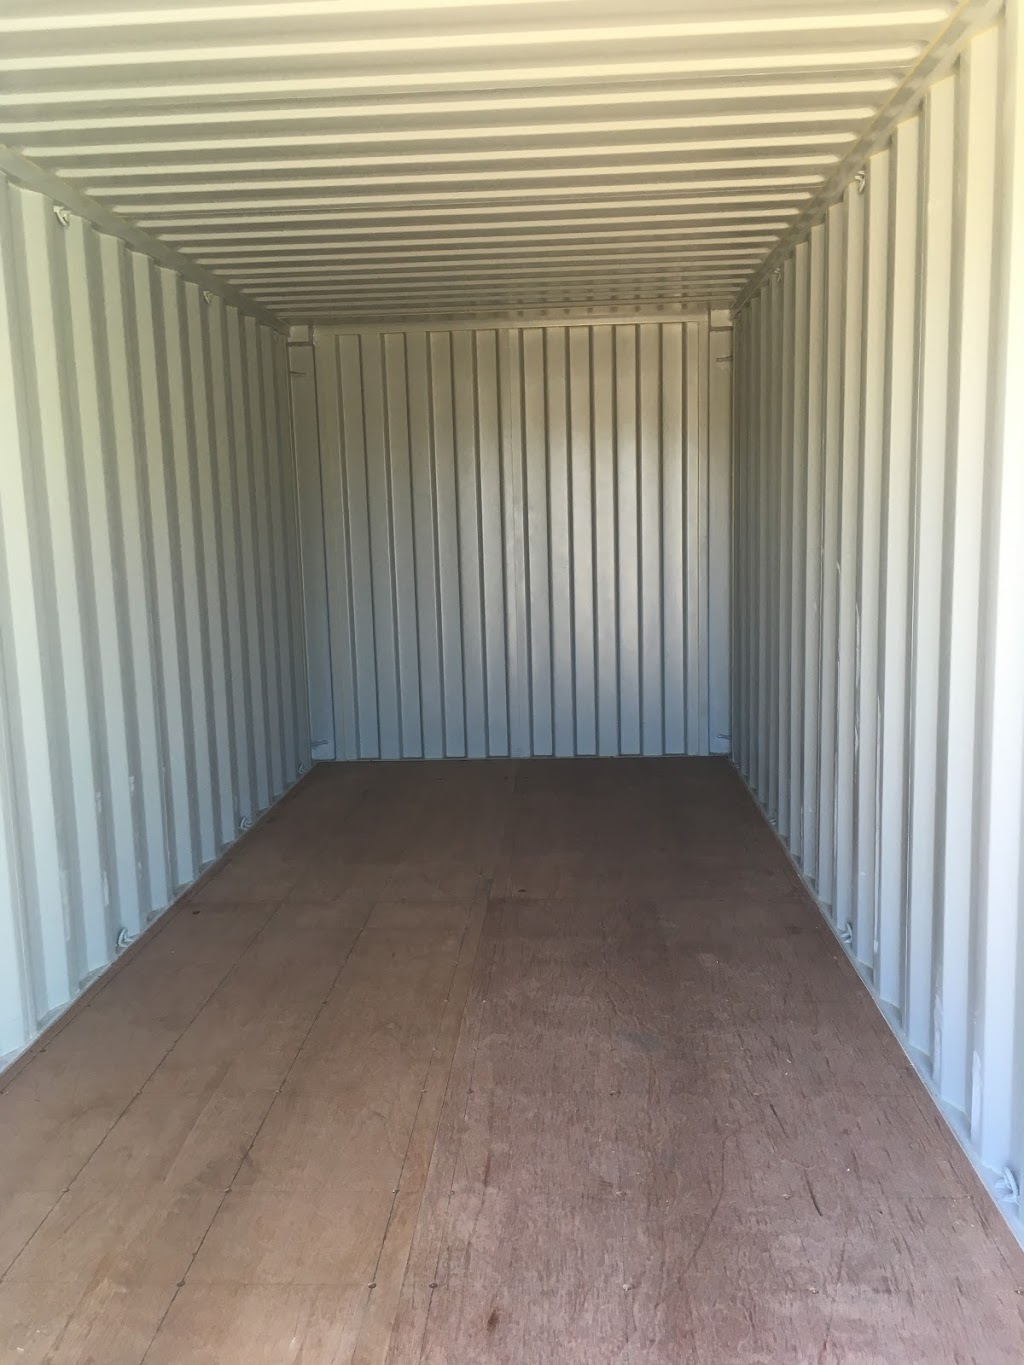 Woodford Self Storage | 32 Chambers Rd, Woodford QLD 4514, Australia | Phone: (07) 5496 3352